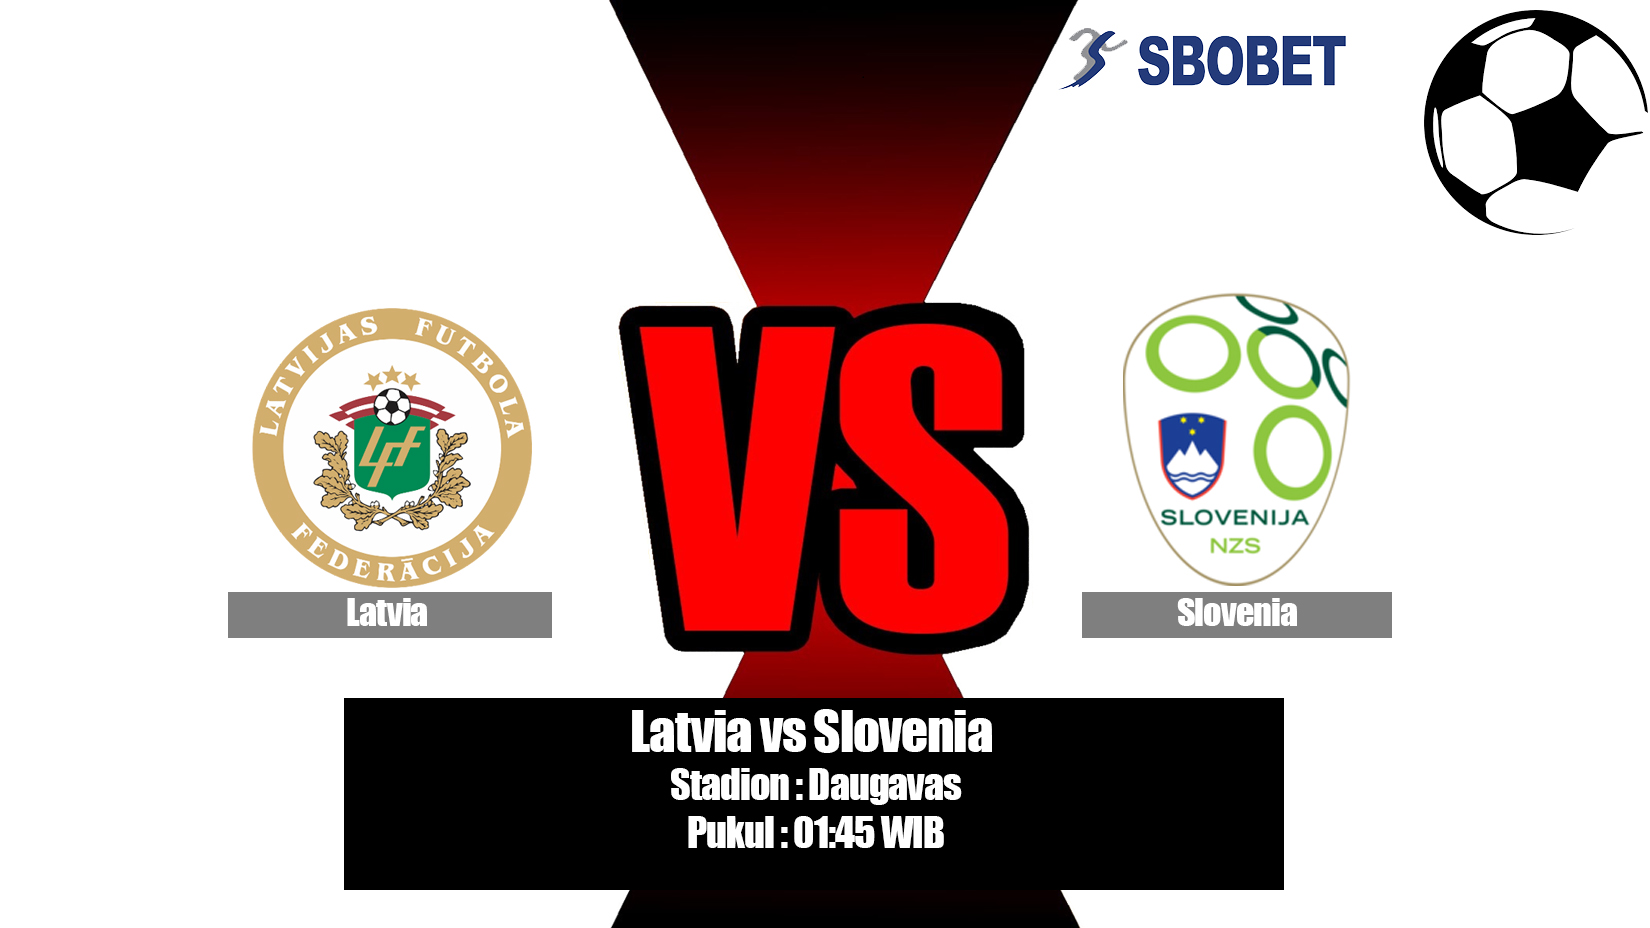 Prediksi Bola Latvia vs Slovenia 11 Juni 2019